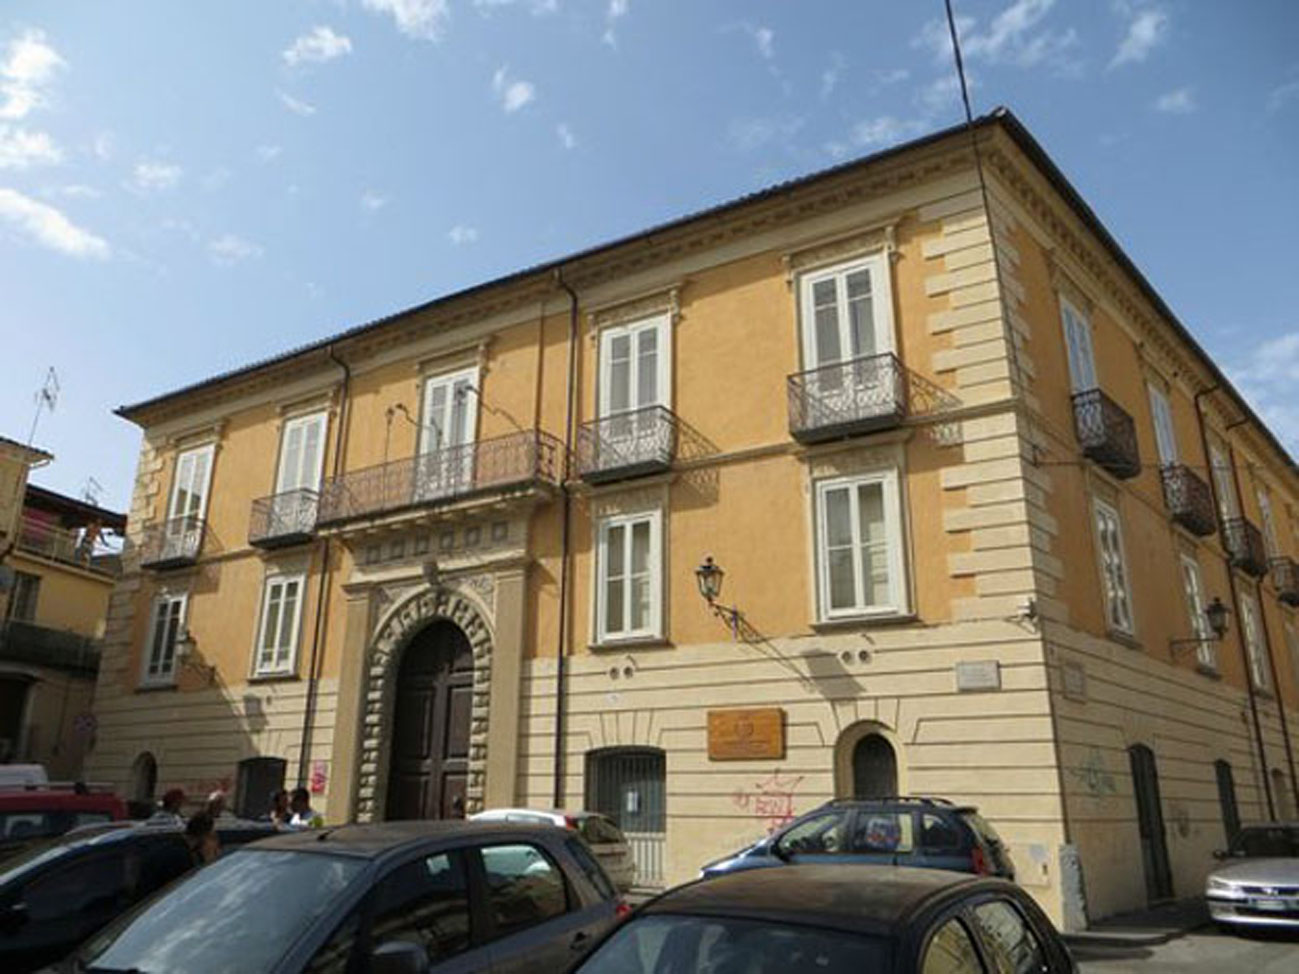 Il Palazzo Nicotera-Severisio, sede della Biblioteca comunale di Lamezia Terme